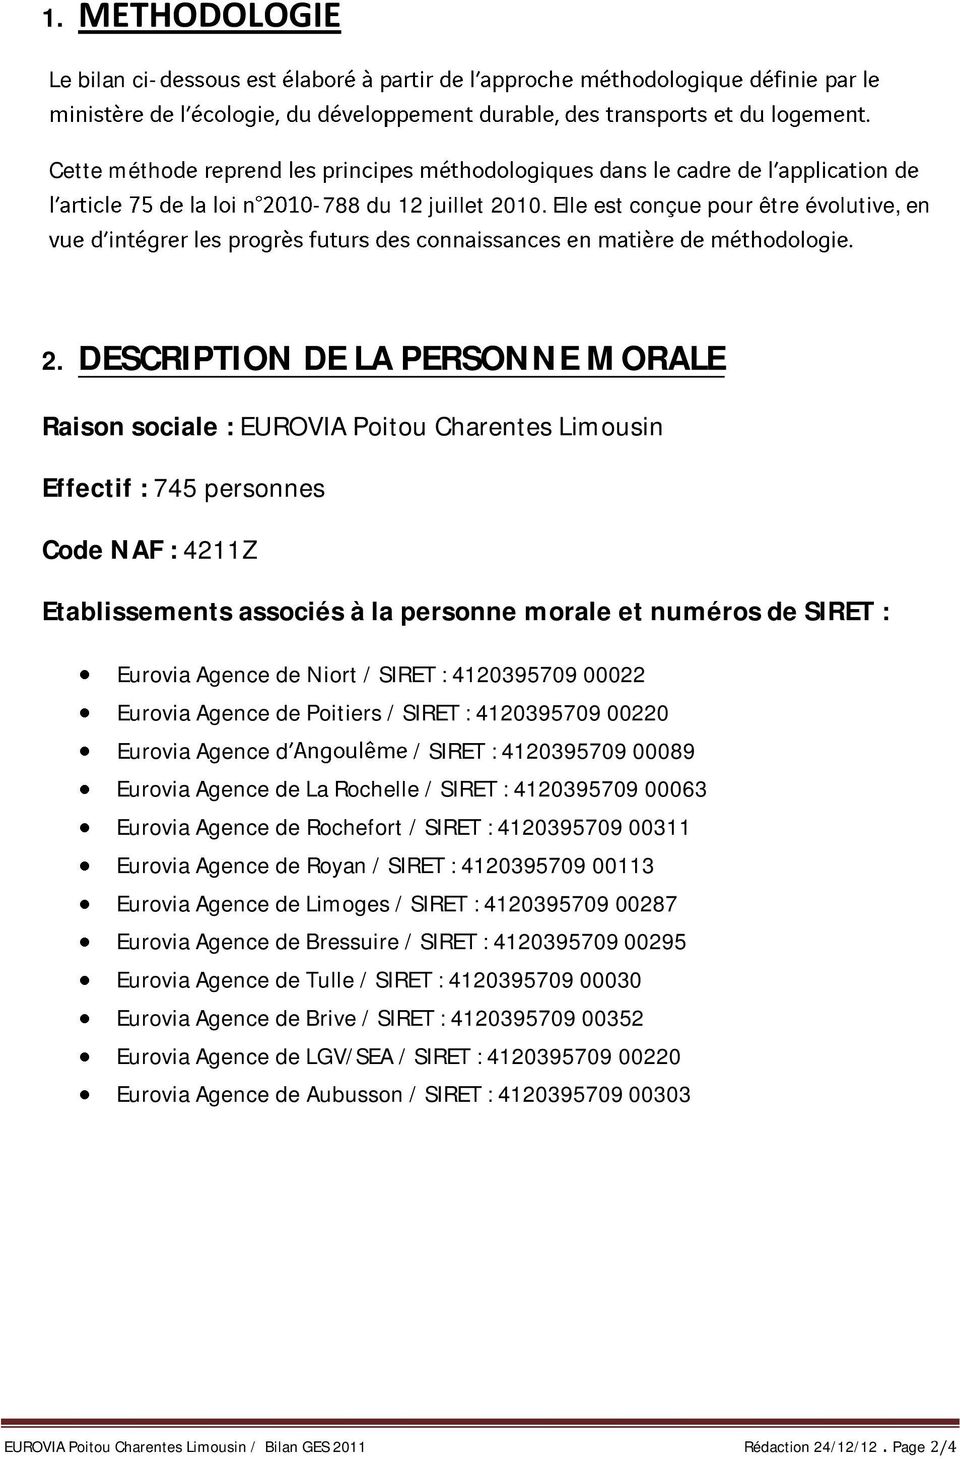 Eurovia Agence de Niort / SIRET : 4120395709 00022 Eurovia Agence de Poitiers / SIRET : 4120395709 00220 Eurovia Agence d / SIRET : 4120395709 00089 Eurovia Agence de La Rochelle / SIRET : 4120395709